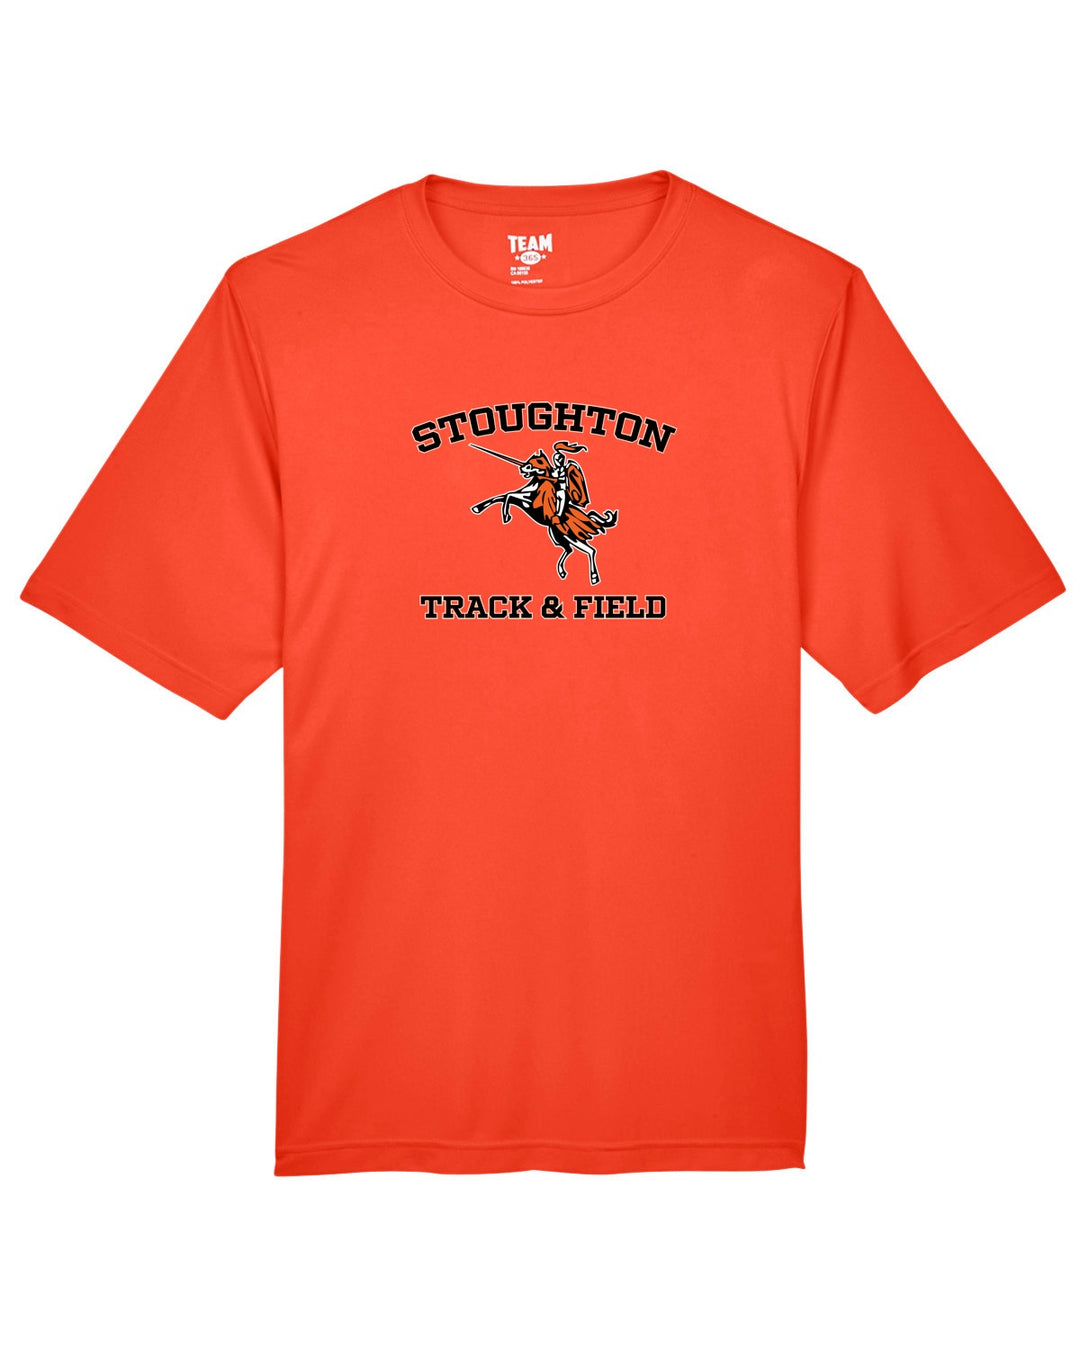 Stoughton Track & Field - Team 365 Men's Zone Performance T-Shirt (TT11)